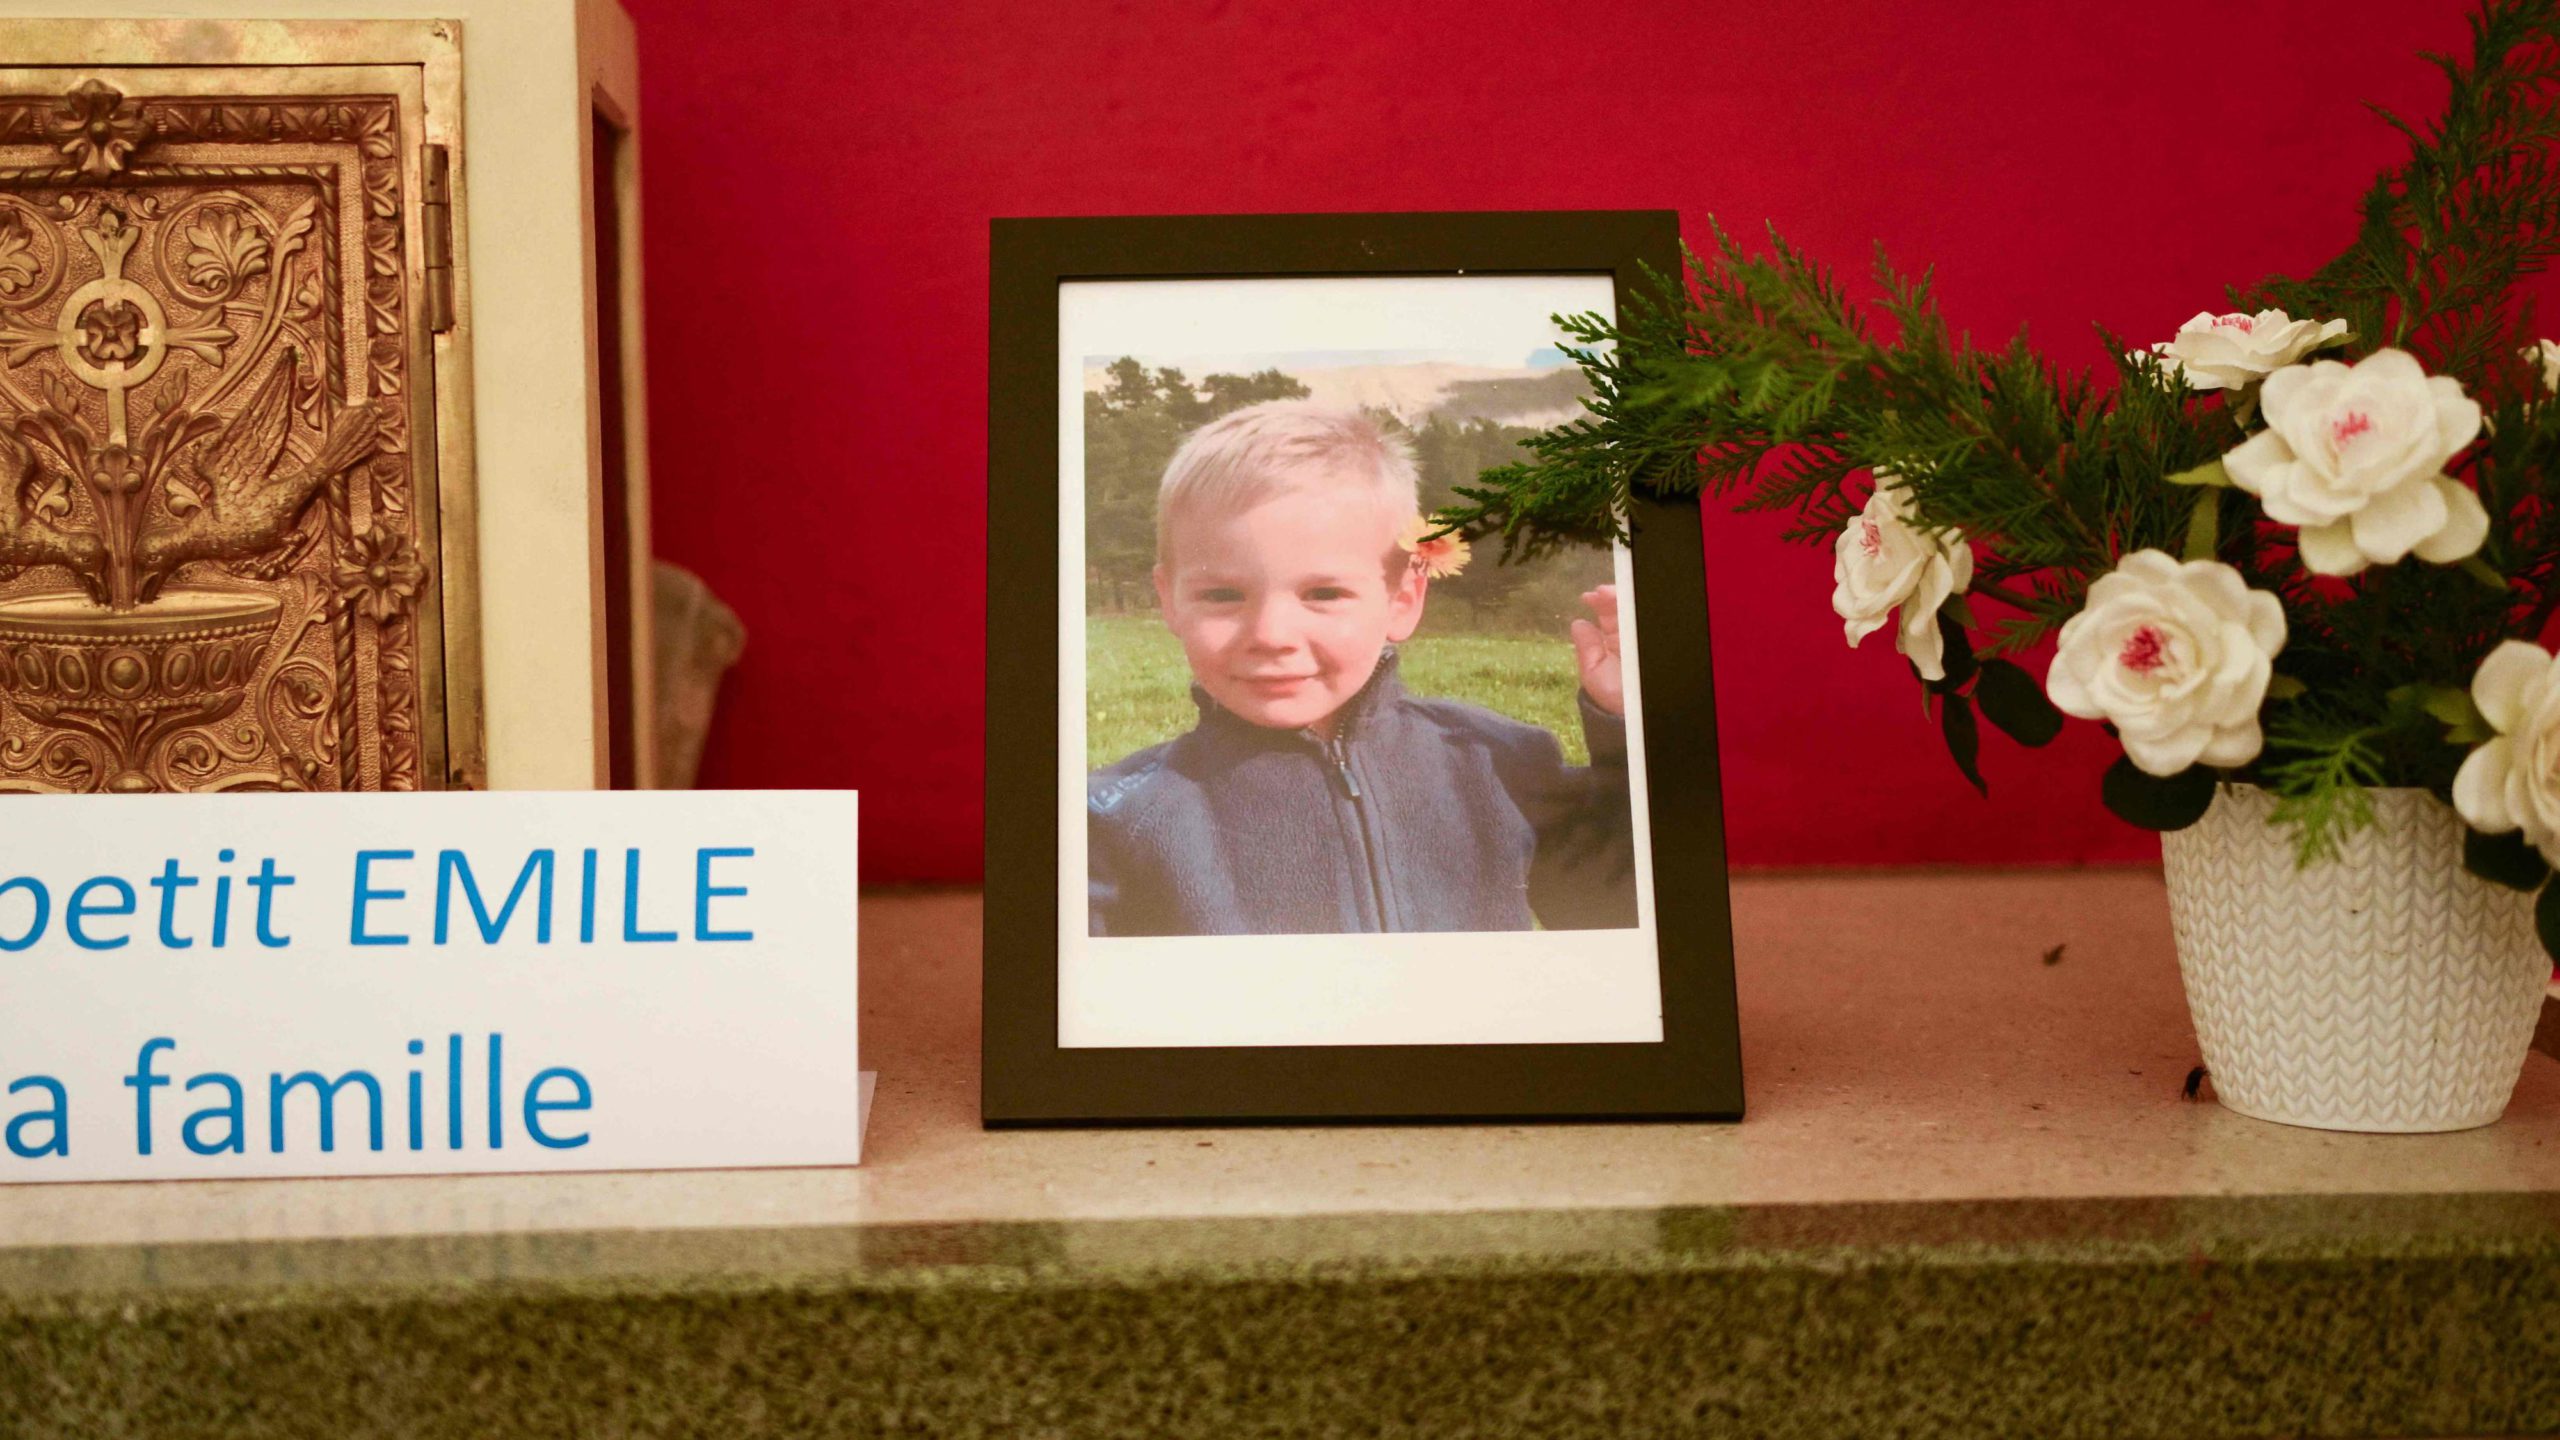 Descubren restos de Émile, el niño desaparecido en julio en Francia